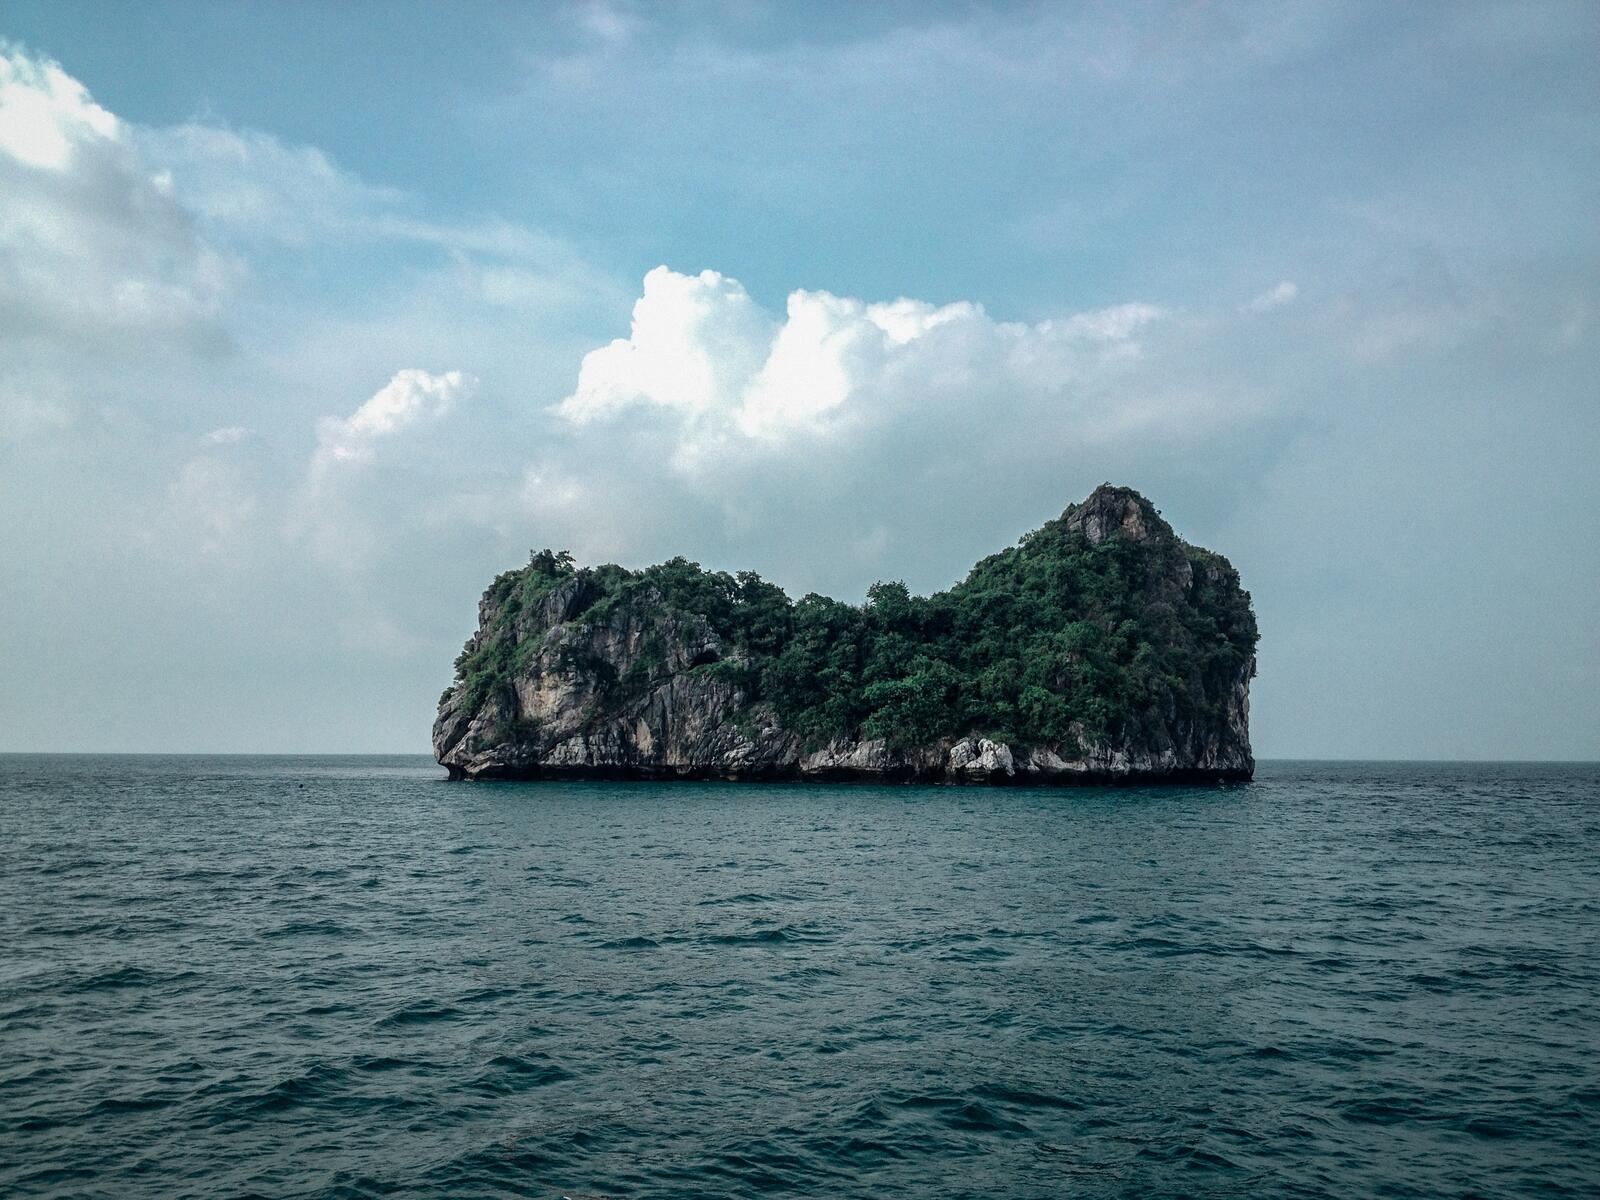 Бесплатное фото Остров среди моря в виде скалы с деревьями на ней